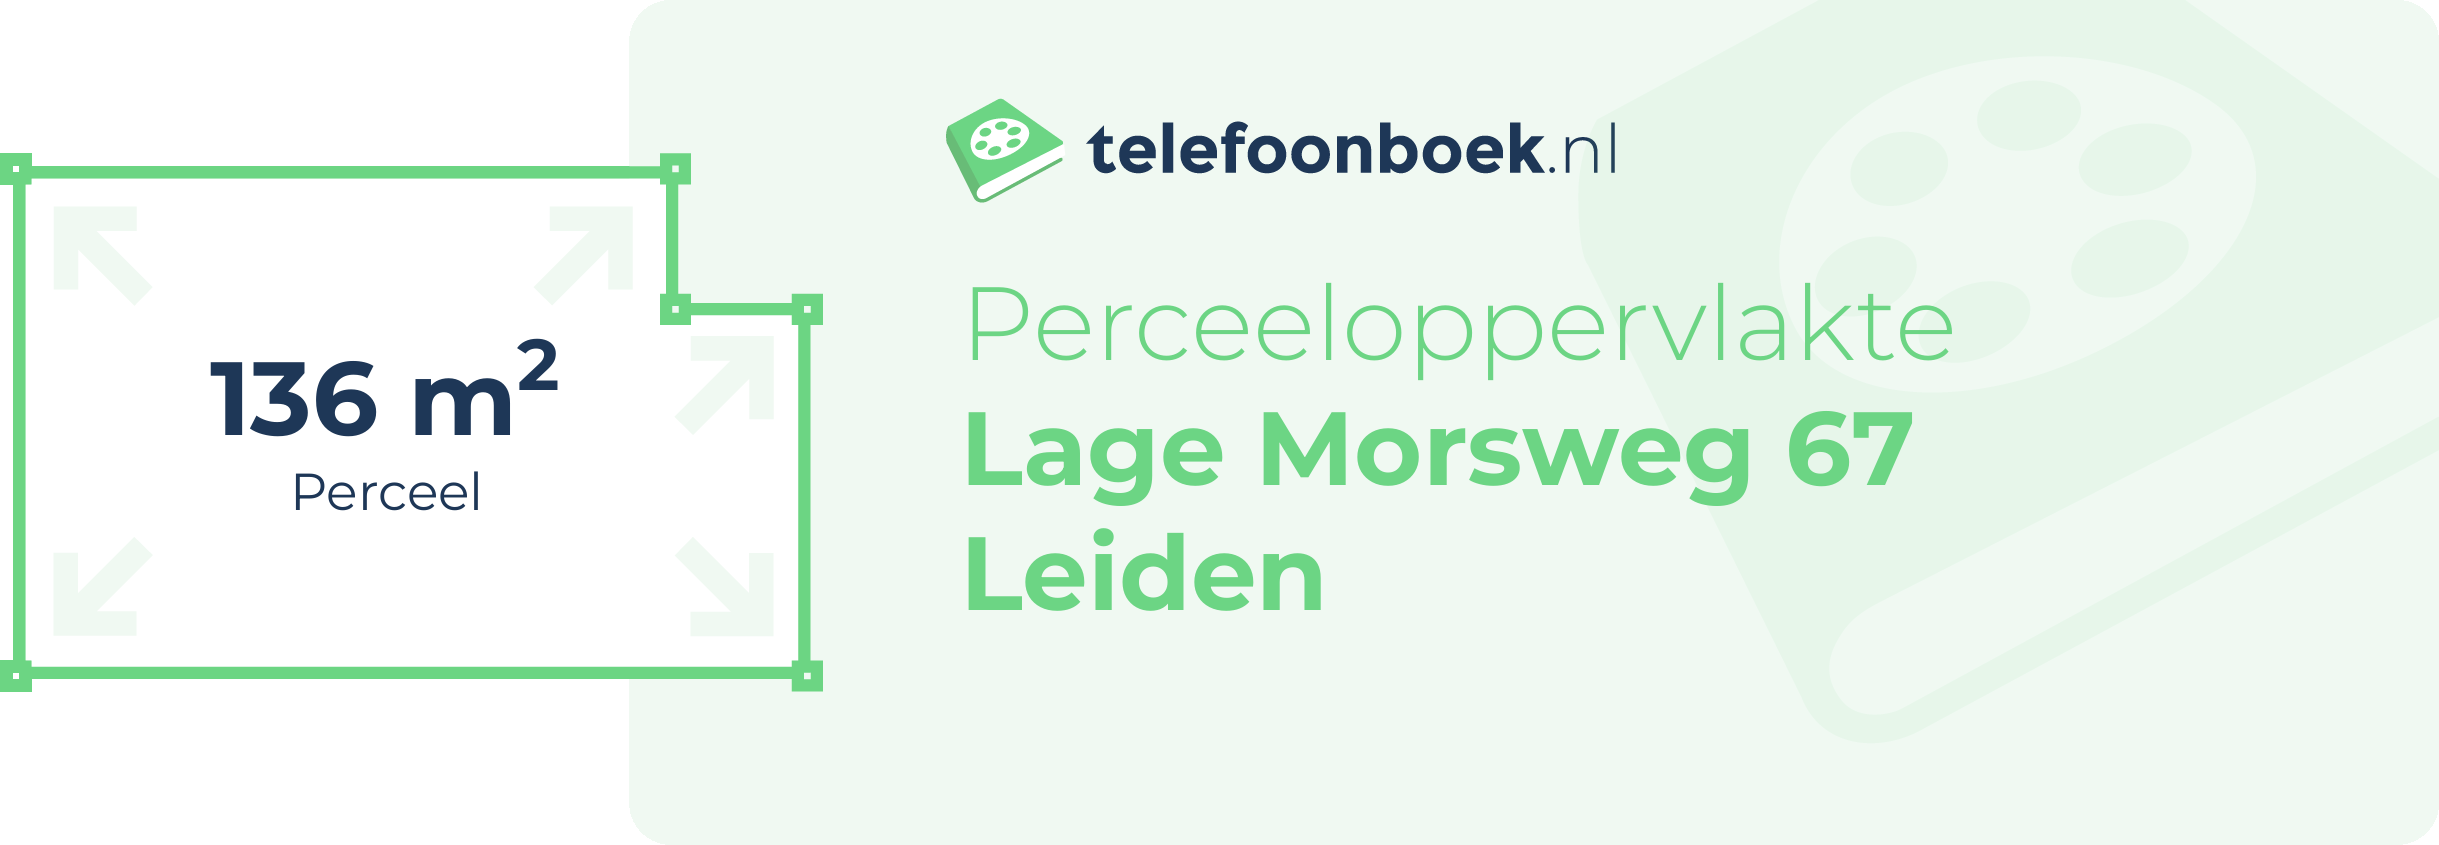 Perceeloppervlakte Lage Morsweg 67 Leiden